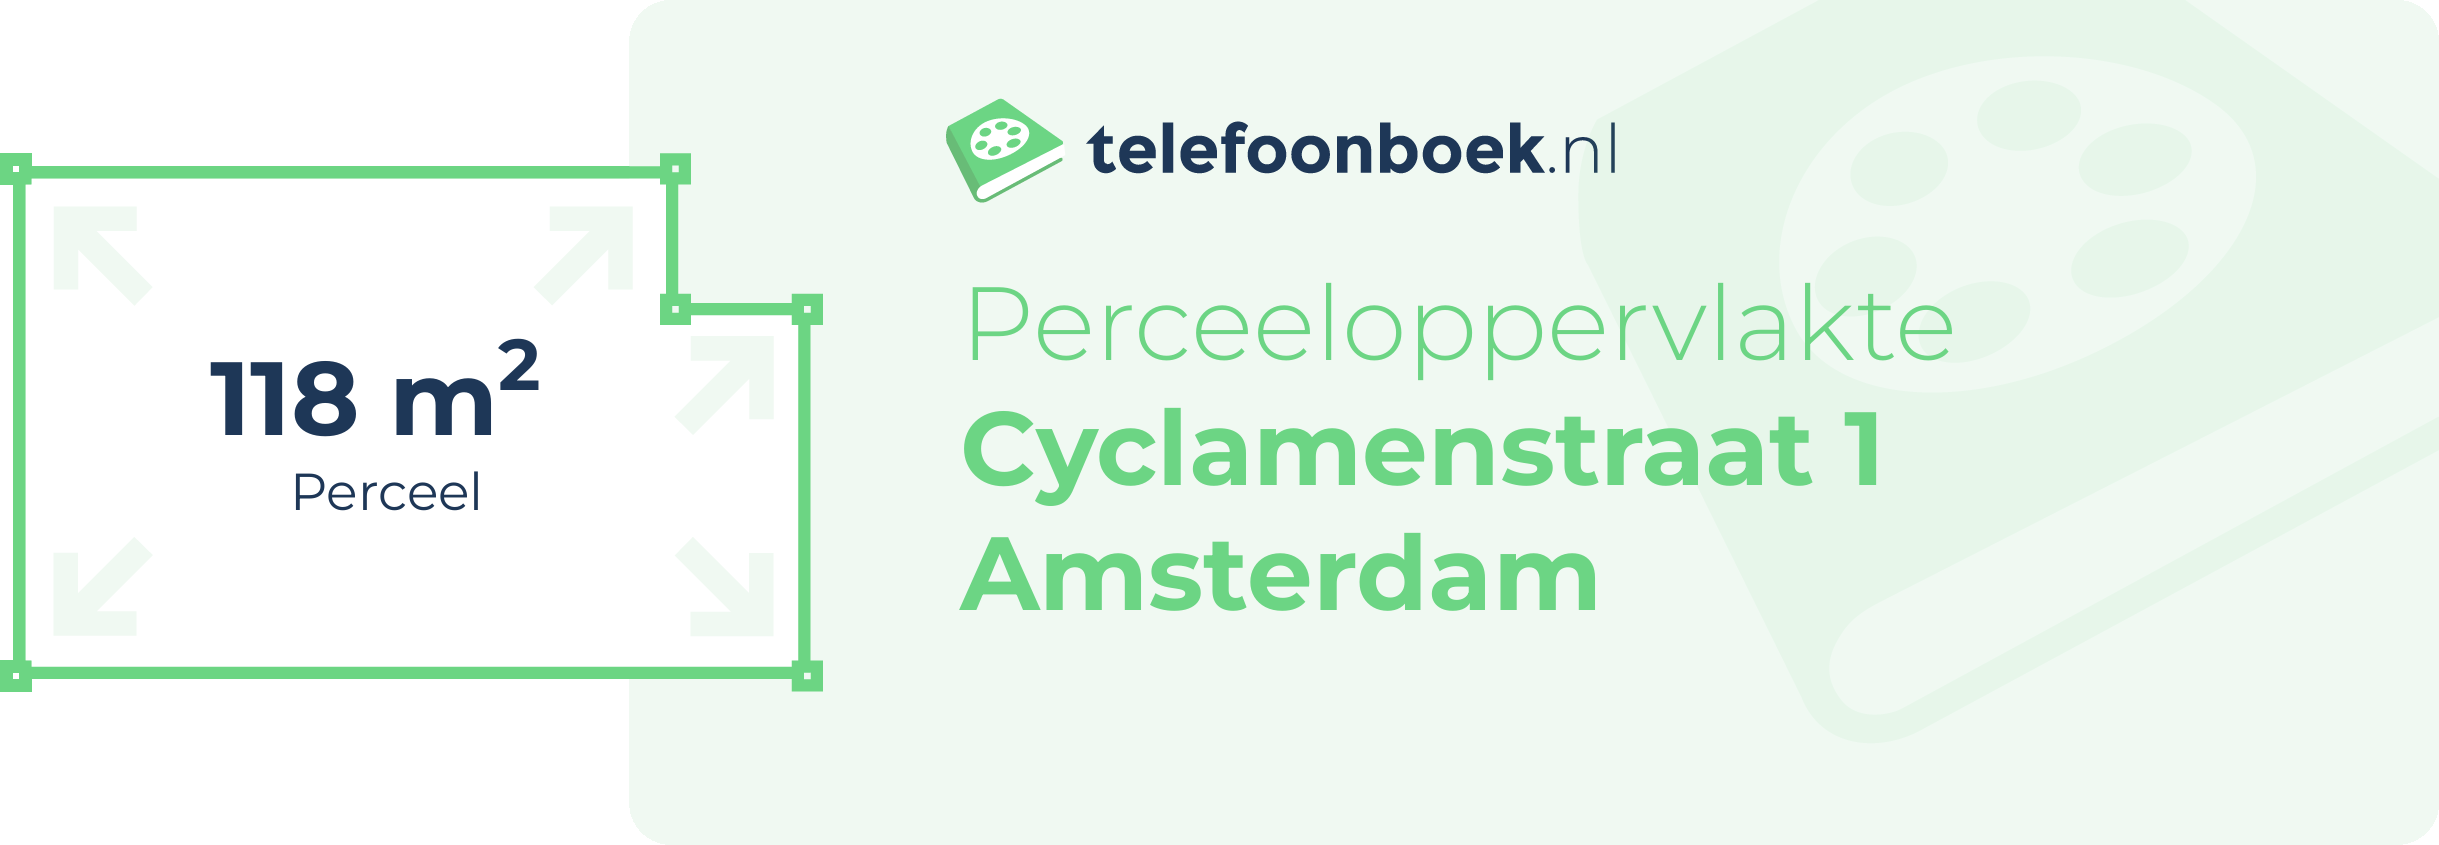 Perceeloppervlakte Cyclamenstraat 1 Amsterdam